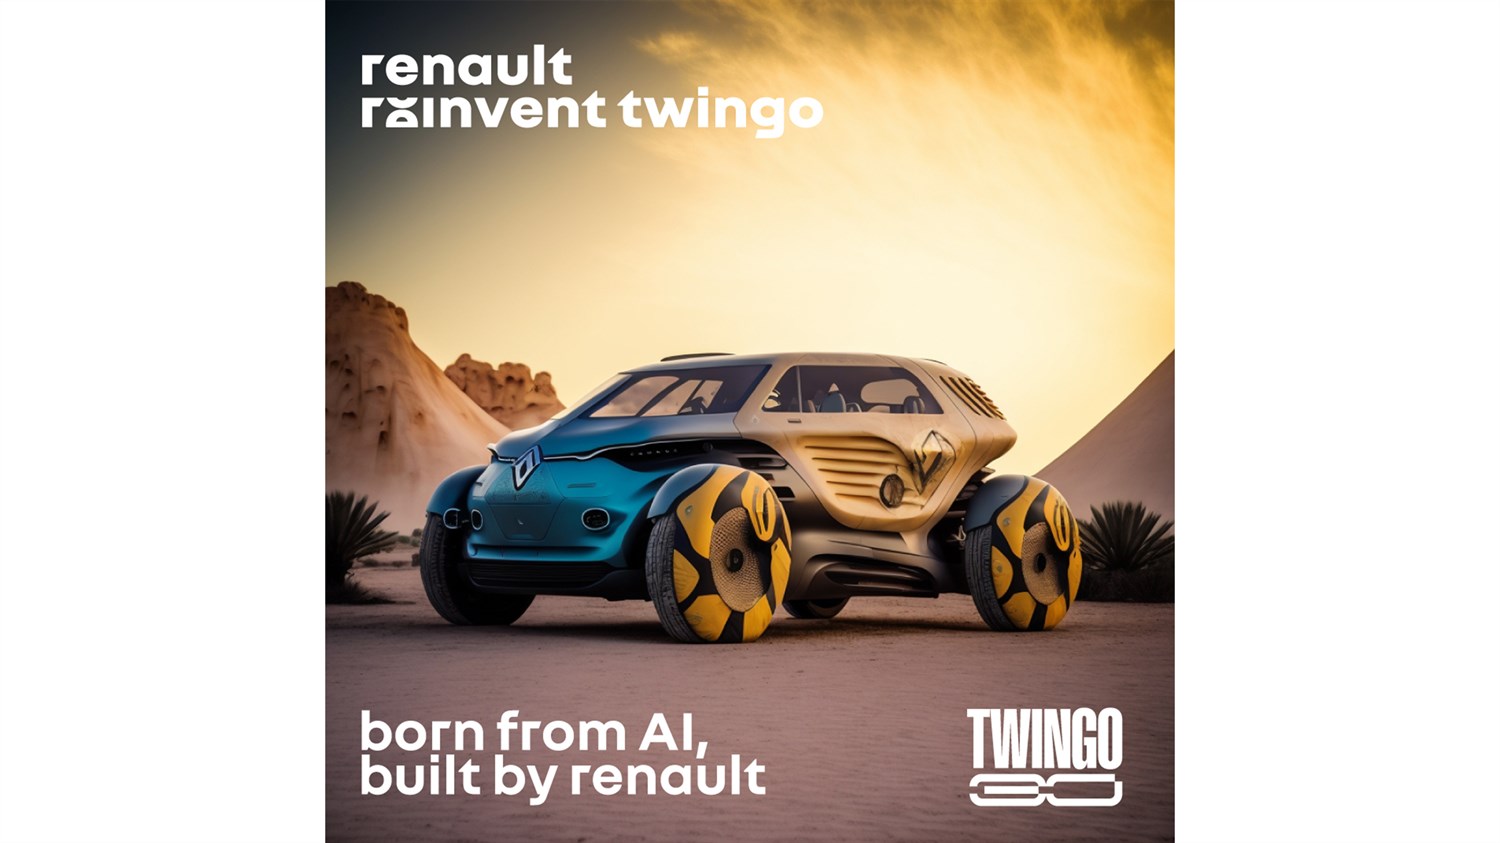 "Reinvent Twingo" promo